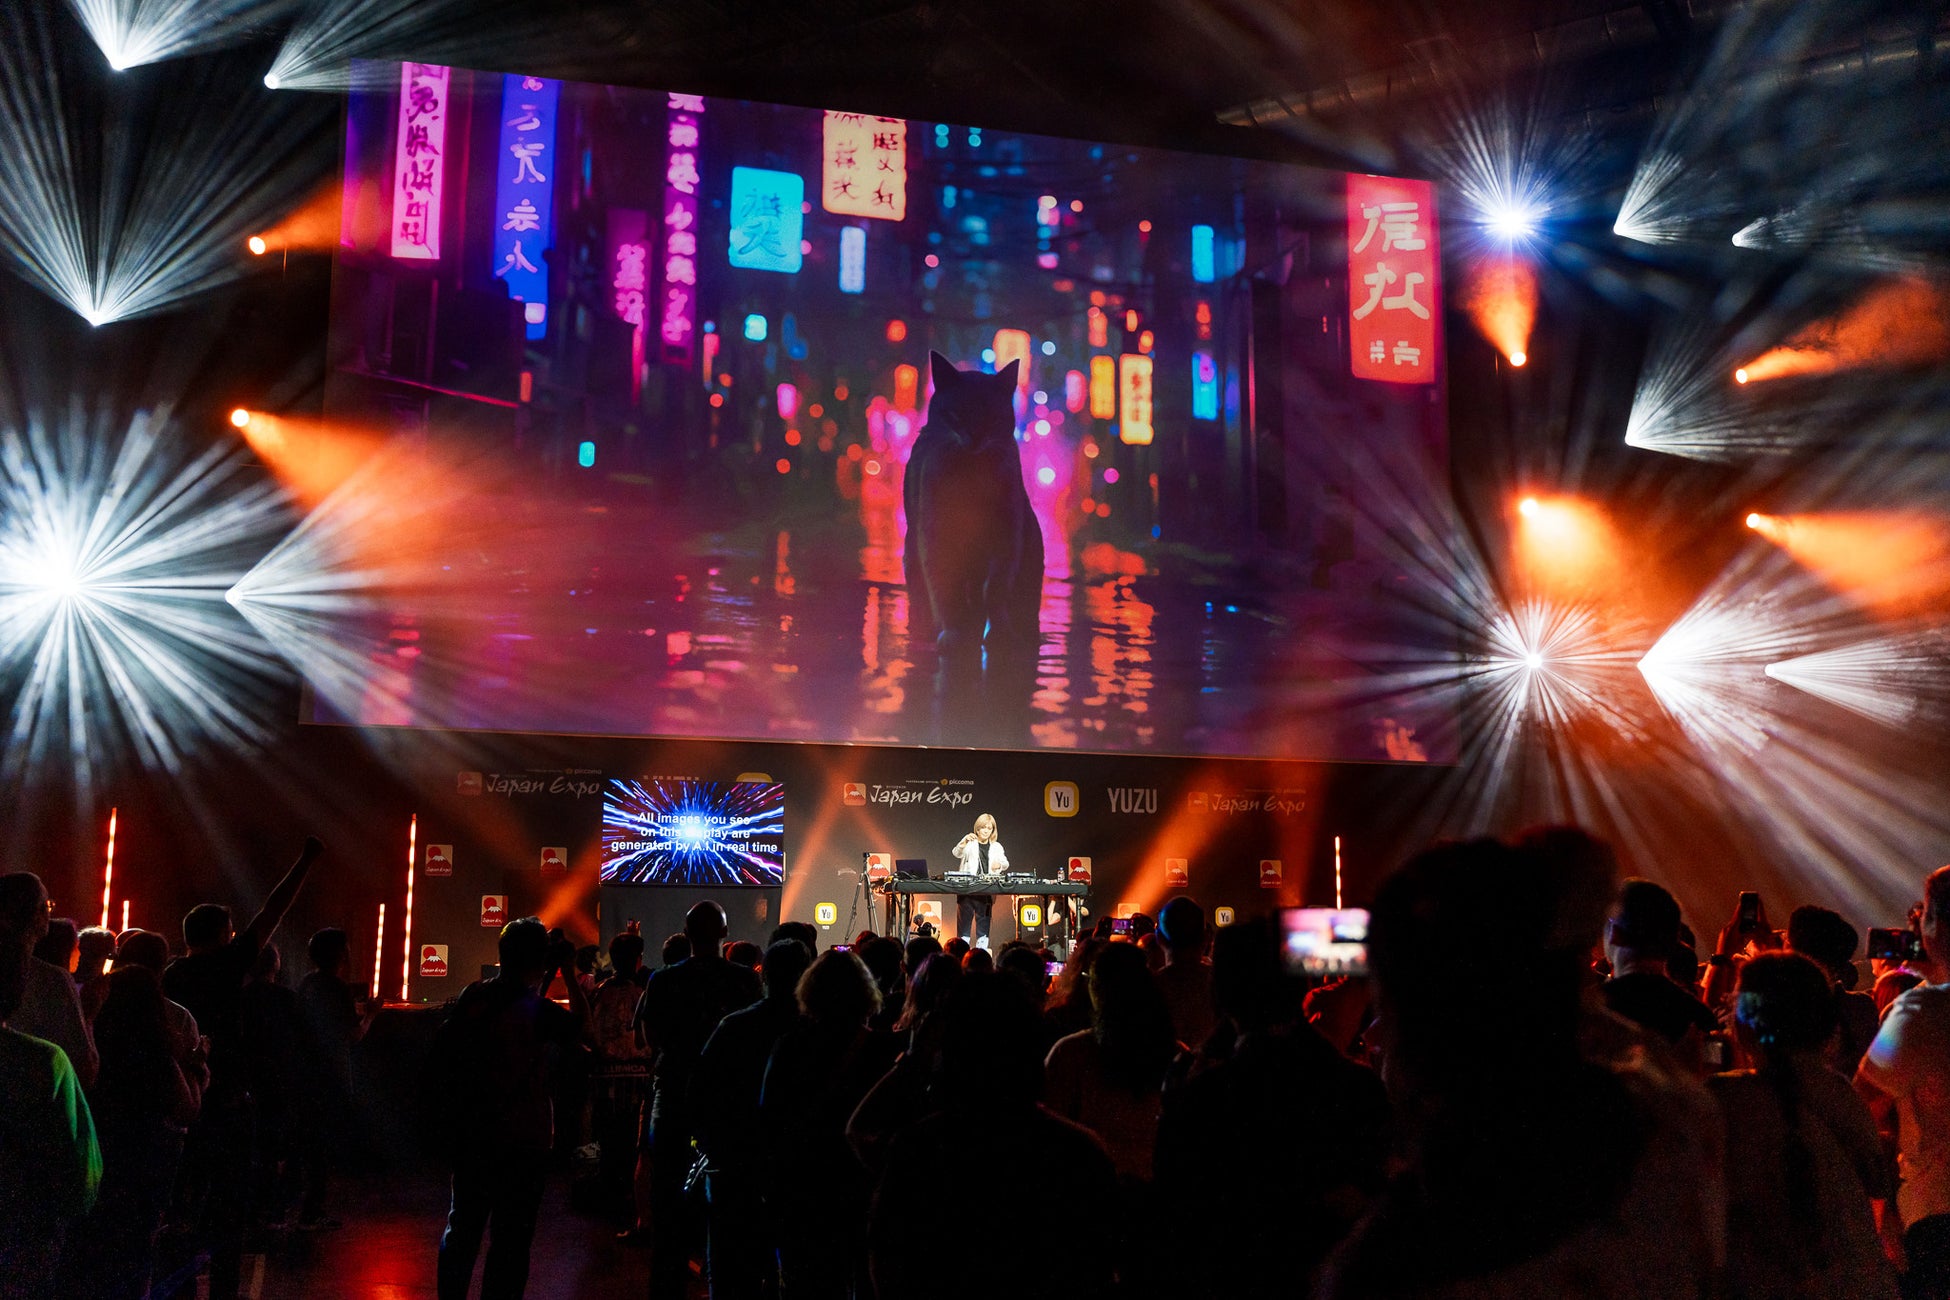 小室哲哉Japan Expo Paris「名誉ゲスト」として招聘AI×LIVEによる世界初のパフォーマンスで魅了！「Get Wild」など、3,000人の大合唱